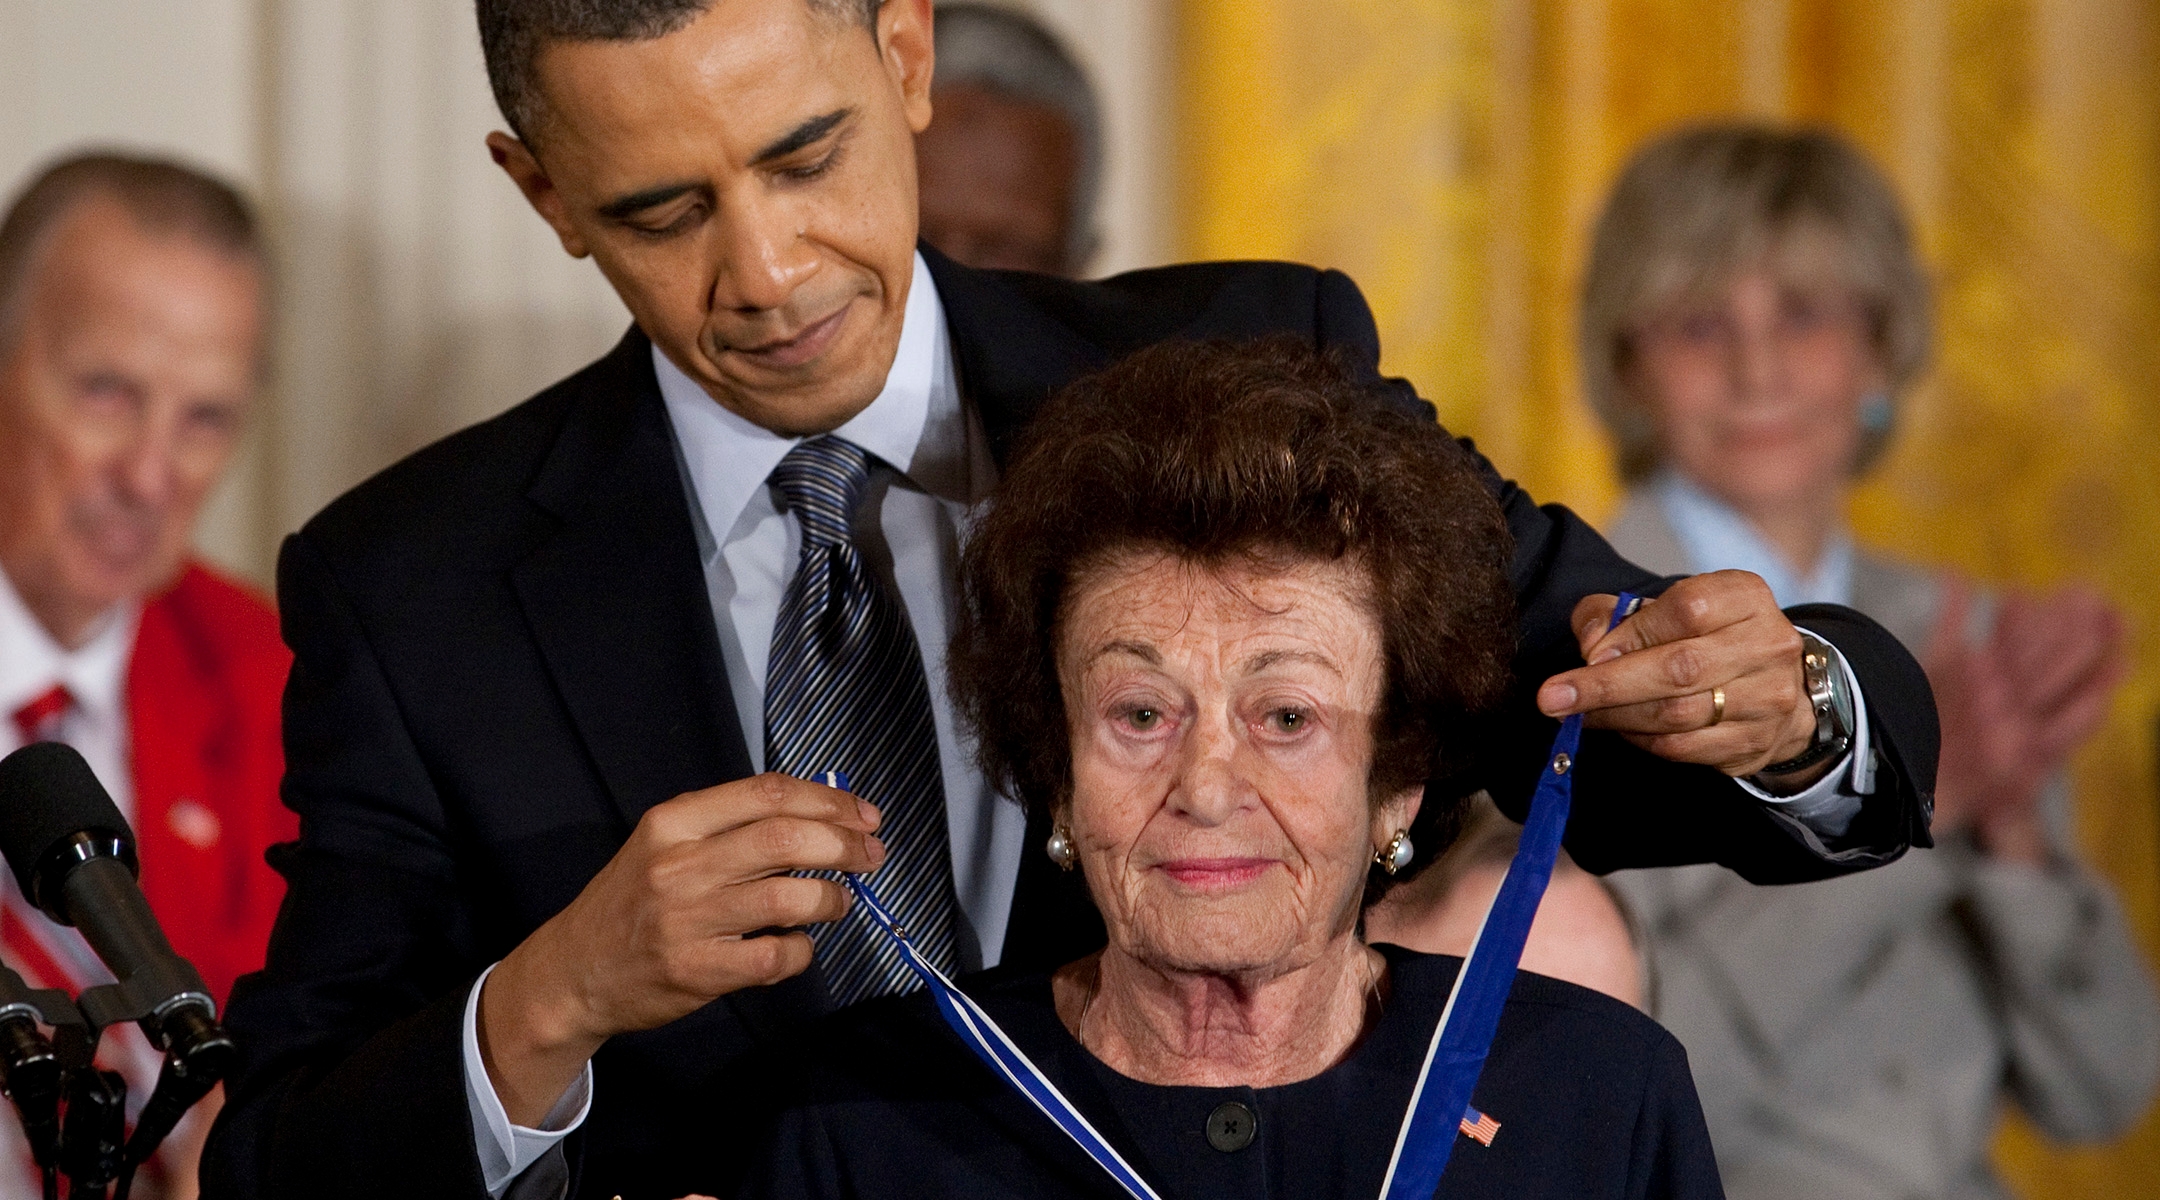 Former President Barack Obama presents Jewish Holocaust survivor Gerda Weissmann Klein